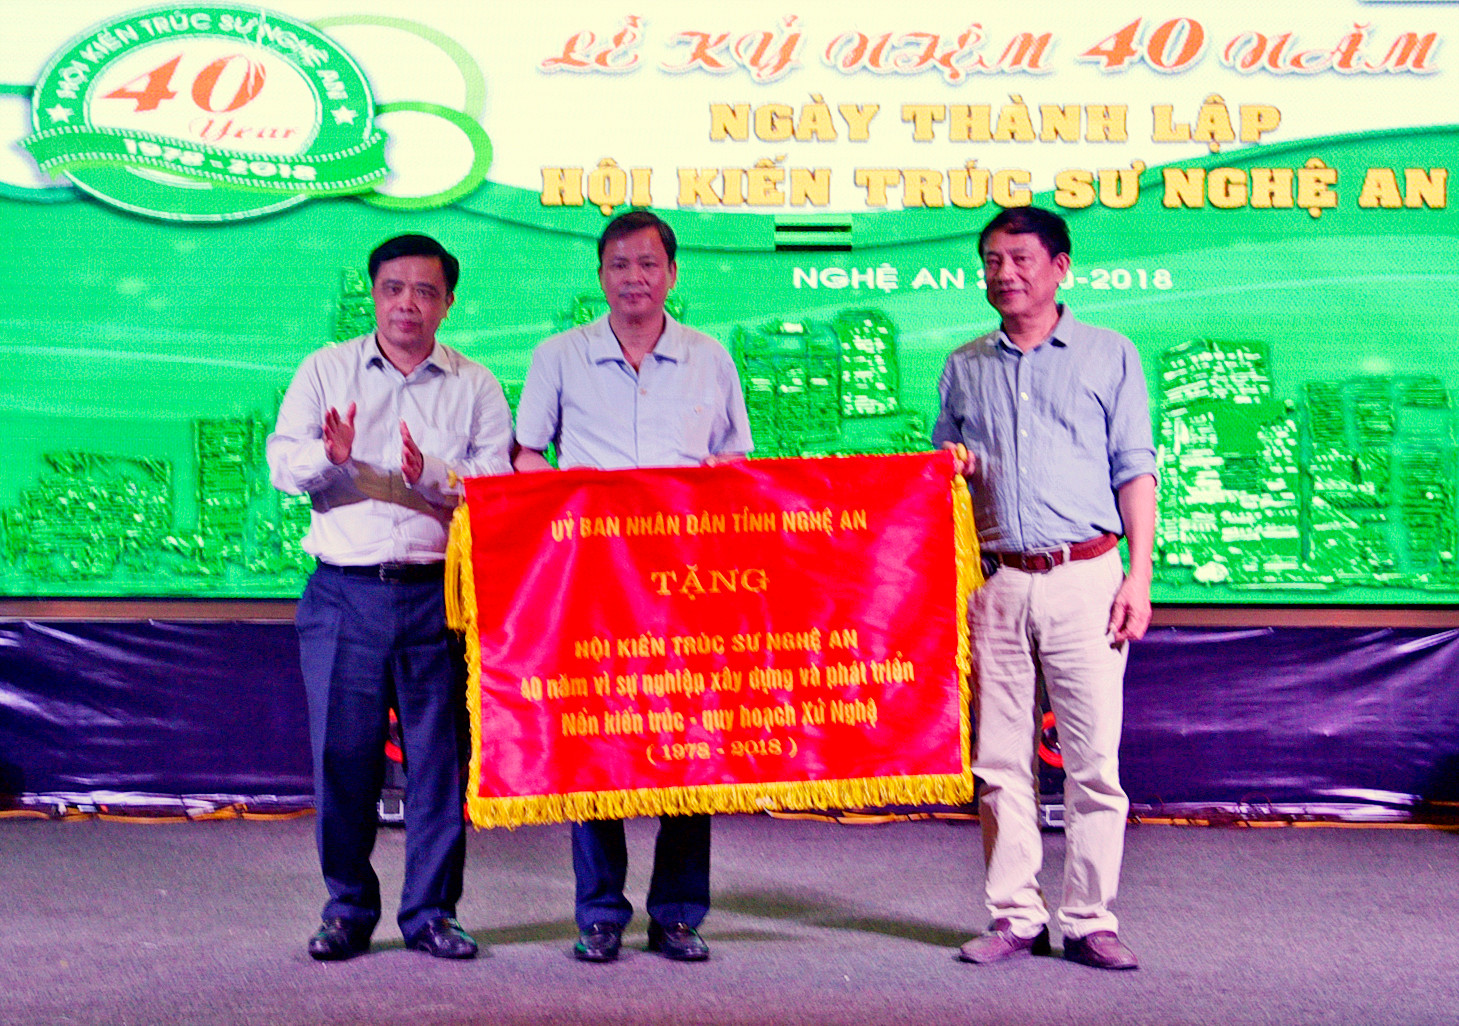 Đồng chí Huỳnh Thanh Điền trao tặng Hội KTS Nghệ An bức trướng. Ảnh: Lâm Tùng